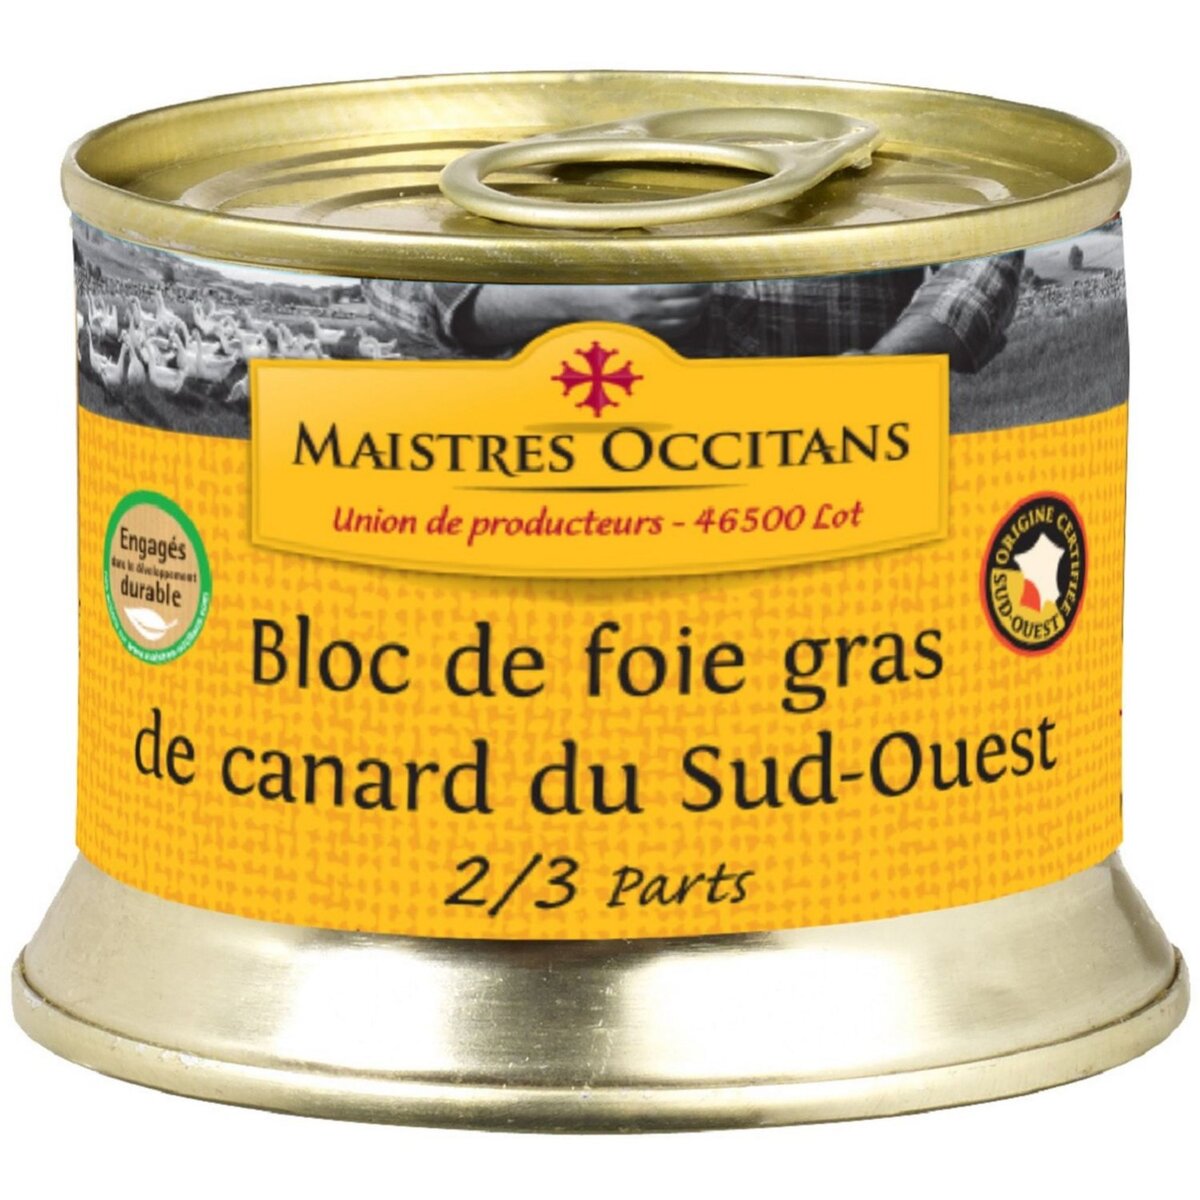 MAISTRES OCCITANS Bloc de foie gras de canard du sud-ouest 2-3 parts 140g